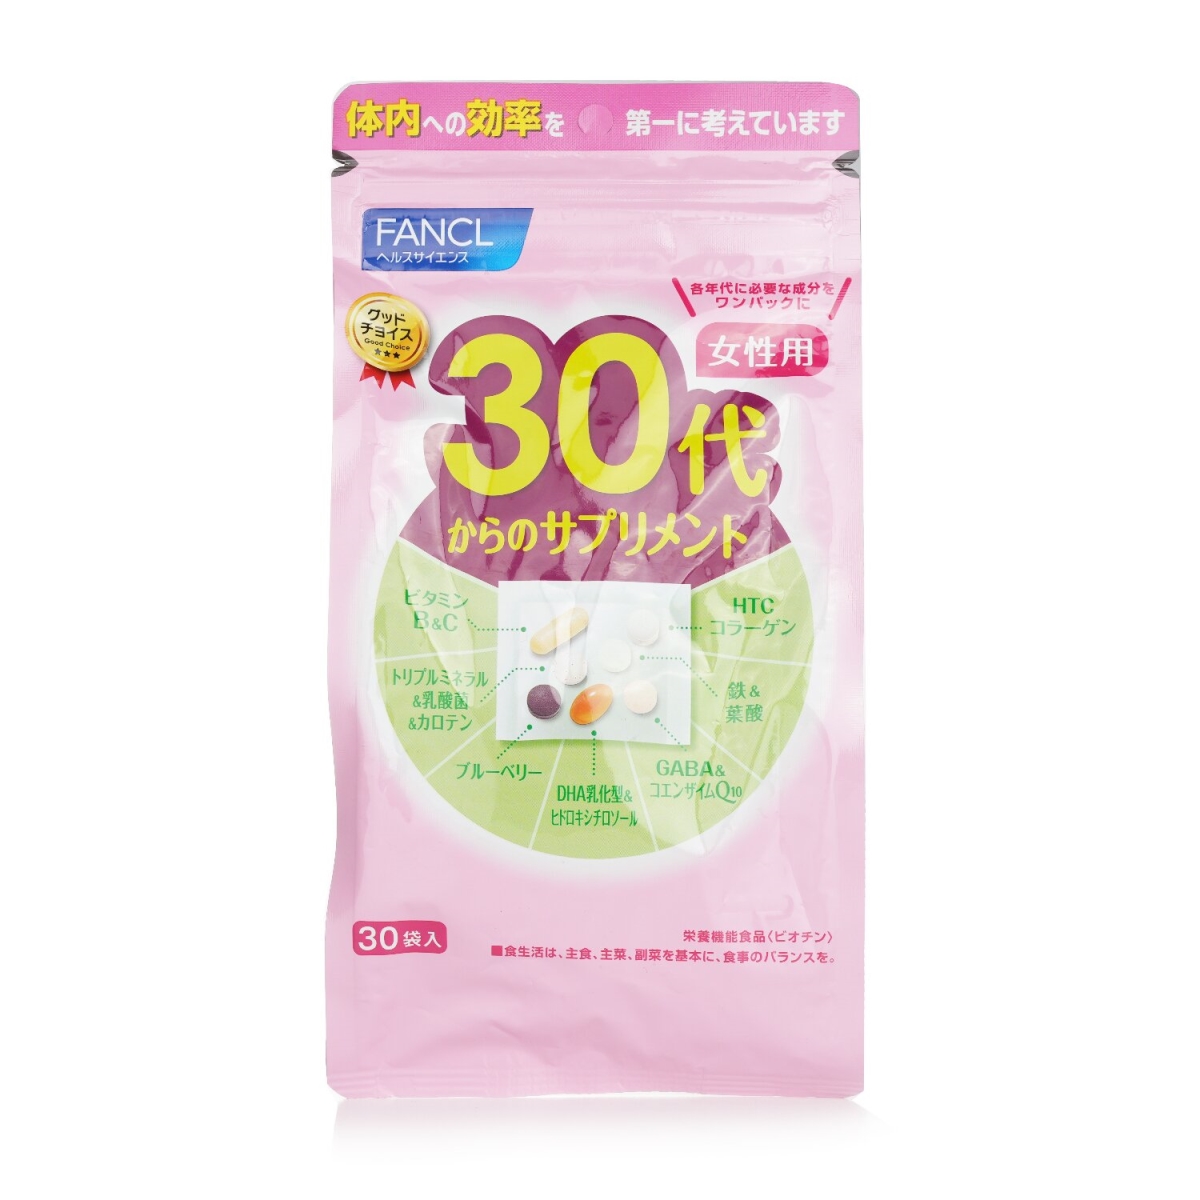 Fancl 281686 Good Choice 30s Women Health Supplement - 30 per Bag